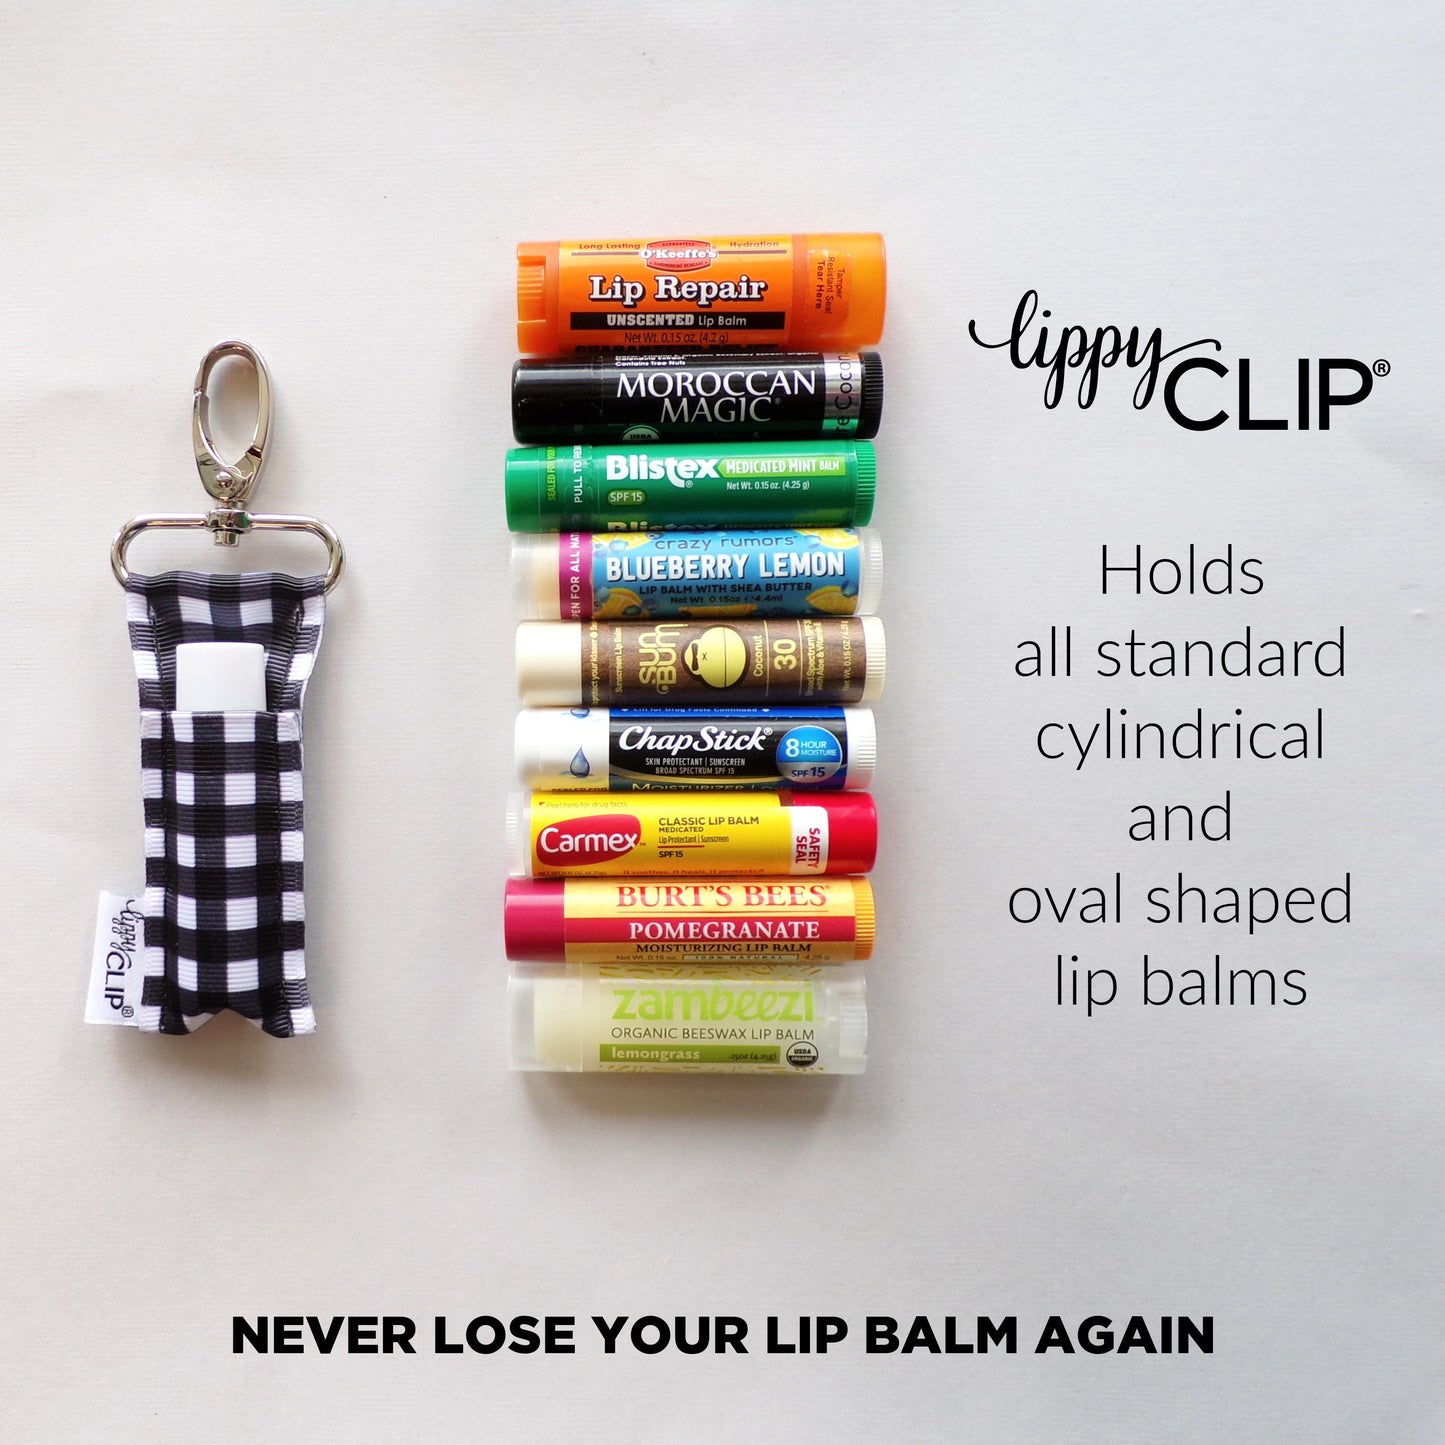 Good Dog LippyClip® Lip Balm Holder